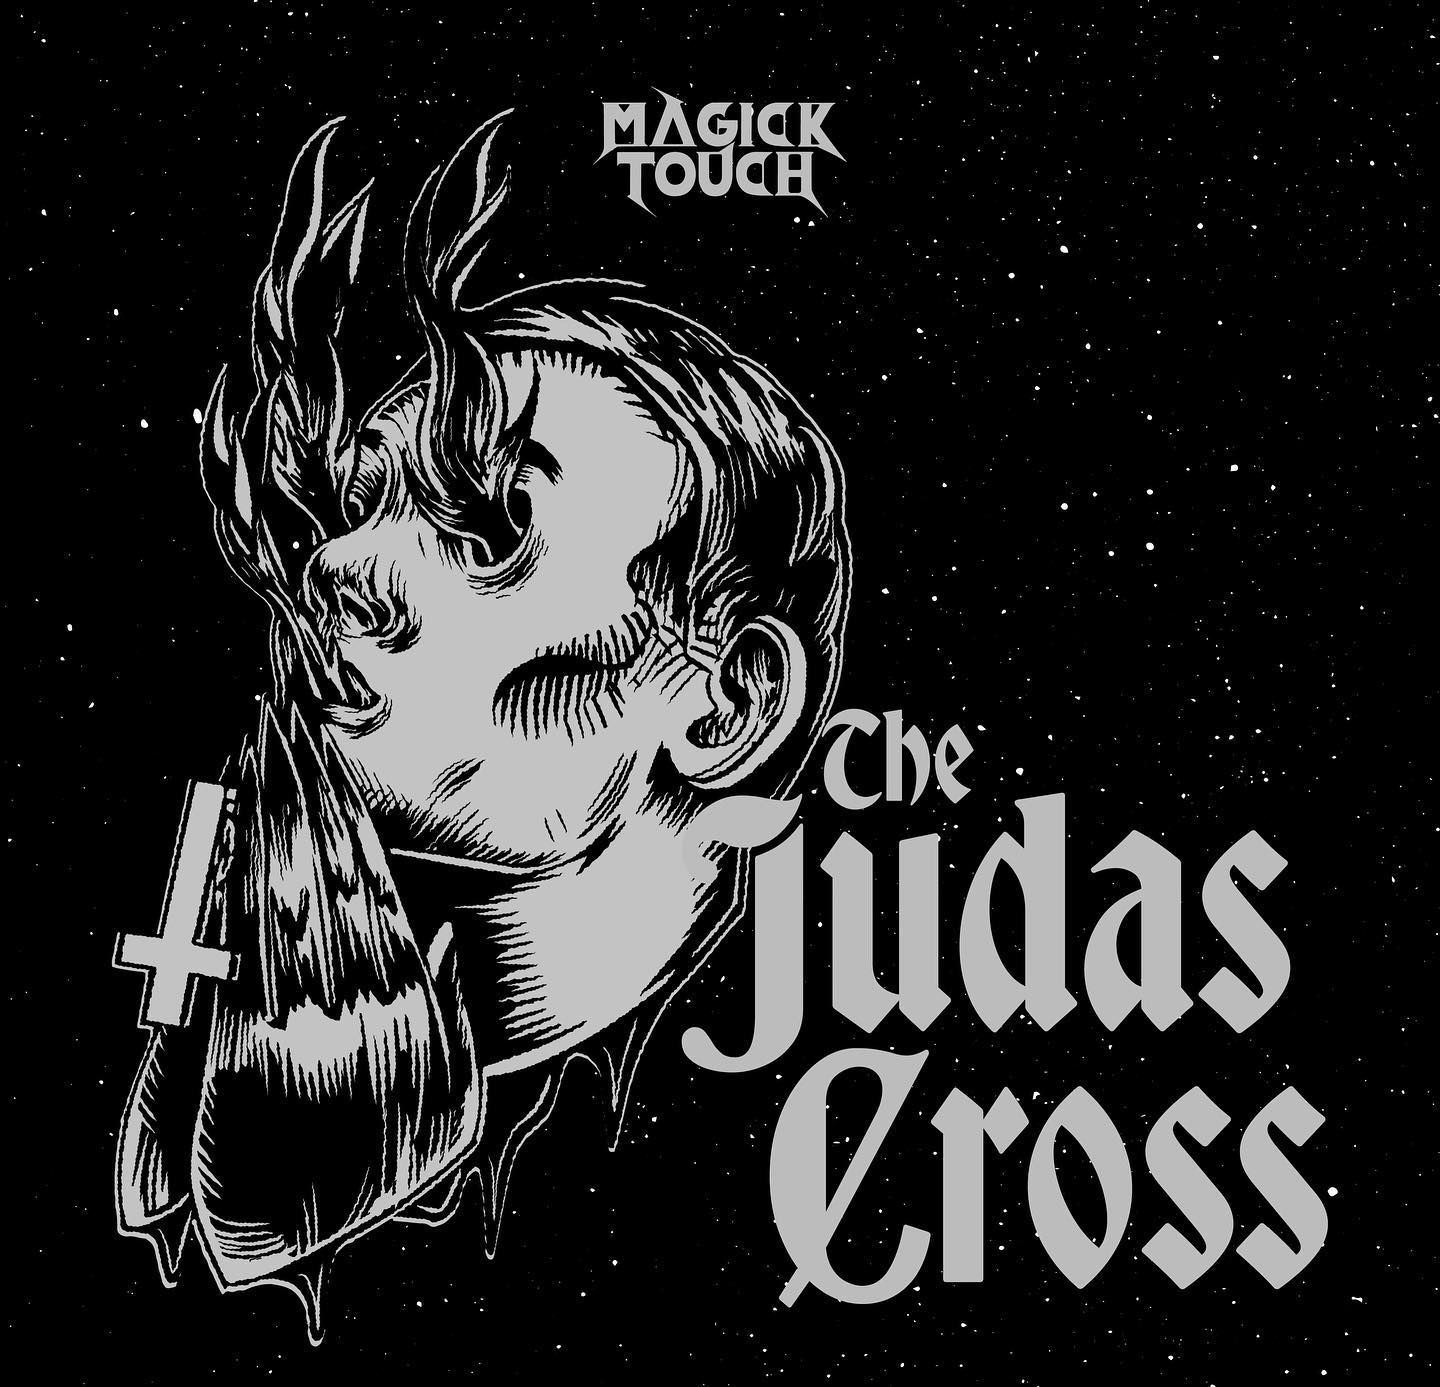 'The Judas Cross'-Video veröffentlicht